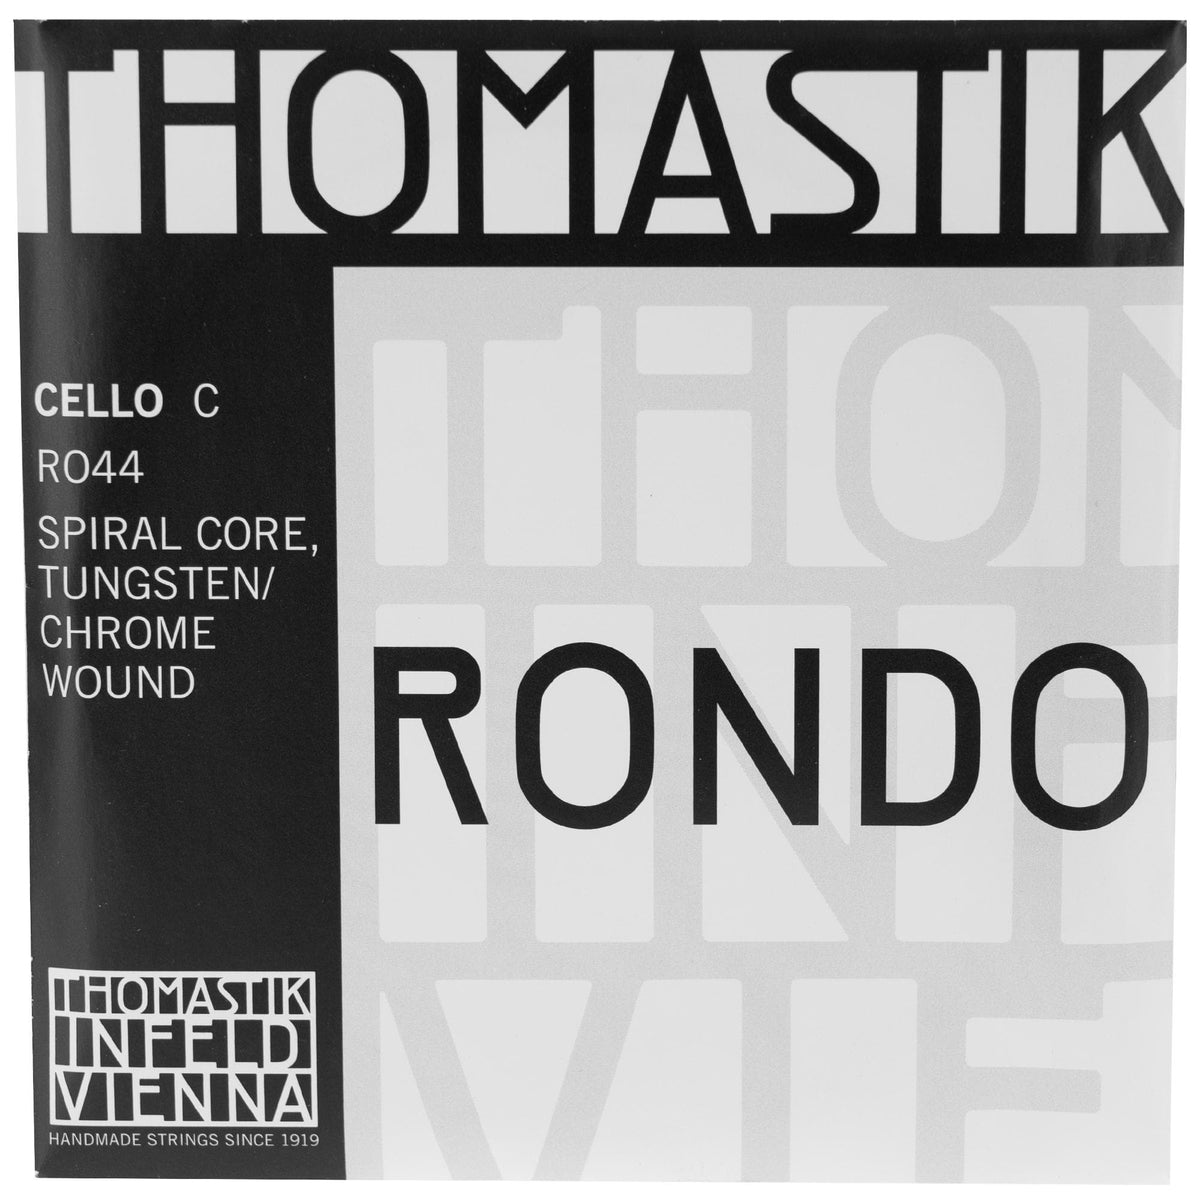 Thomastik Rondo Cello C